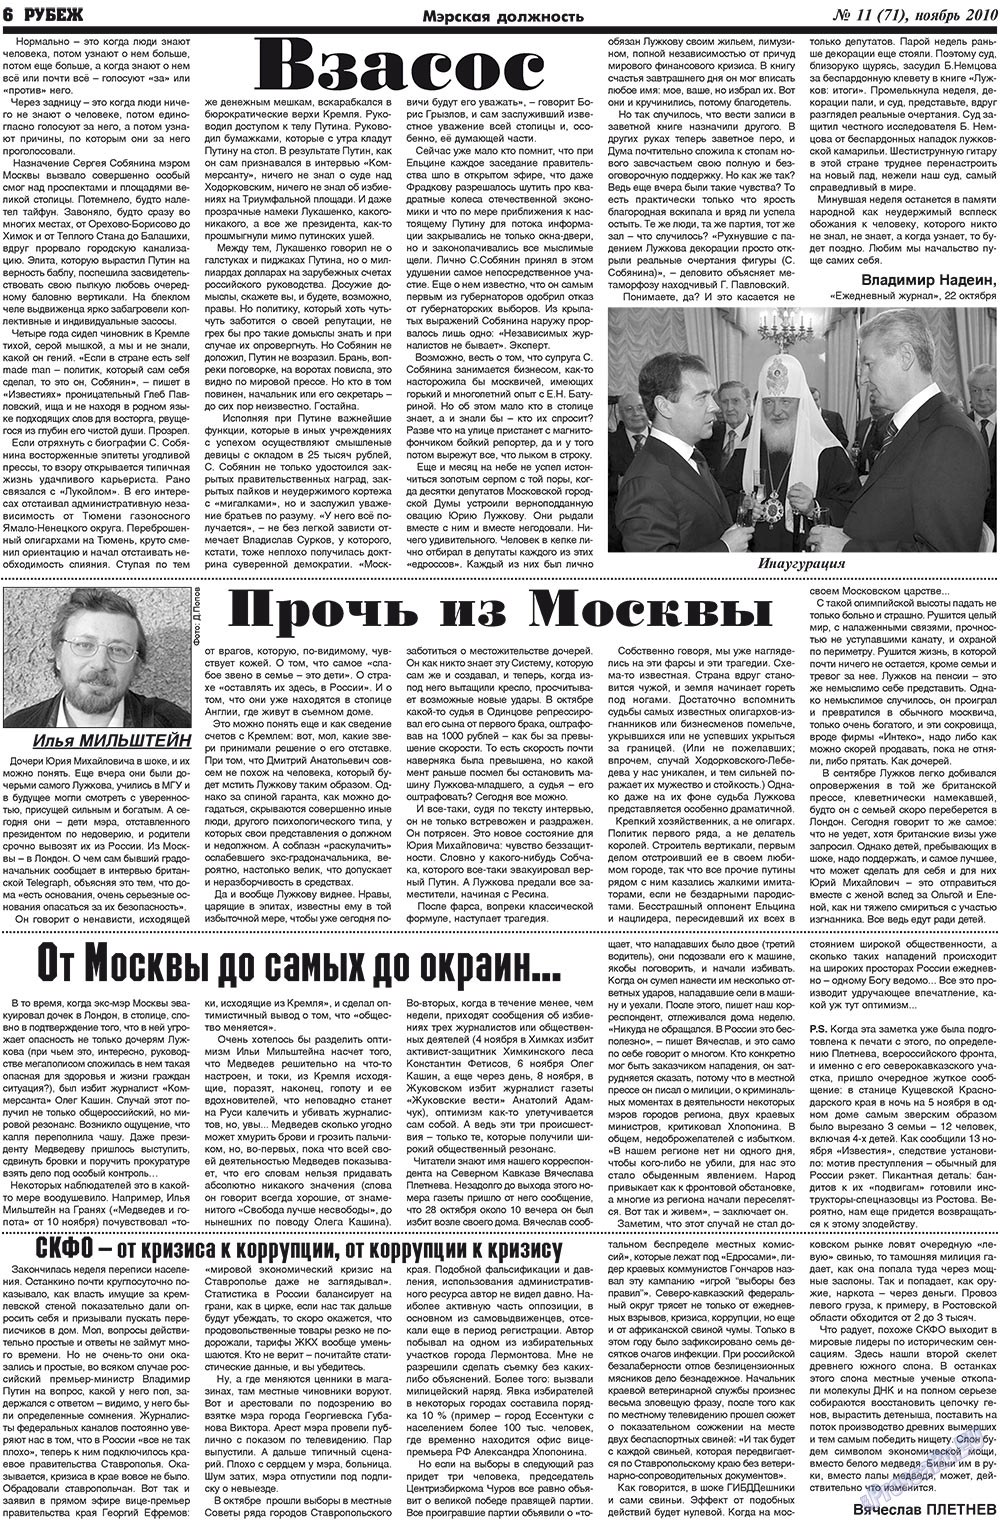 Рубеж (газета). 2010 год, номер 11, стр. 6